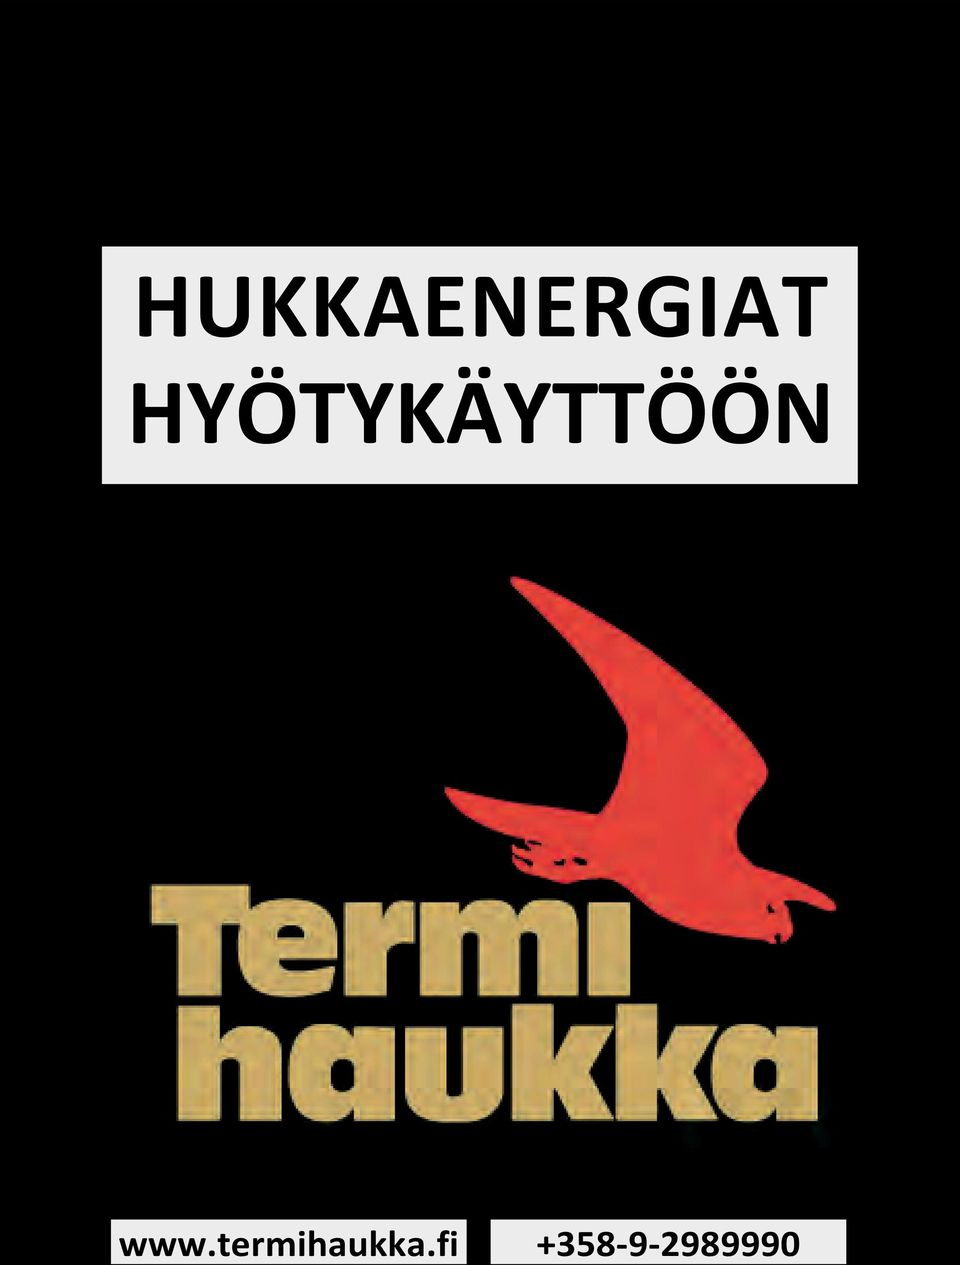 www.termihaukka.